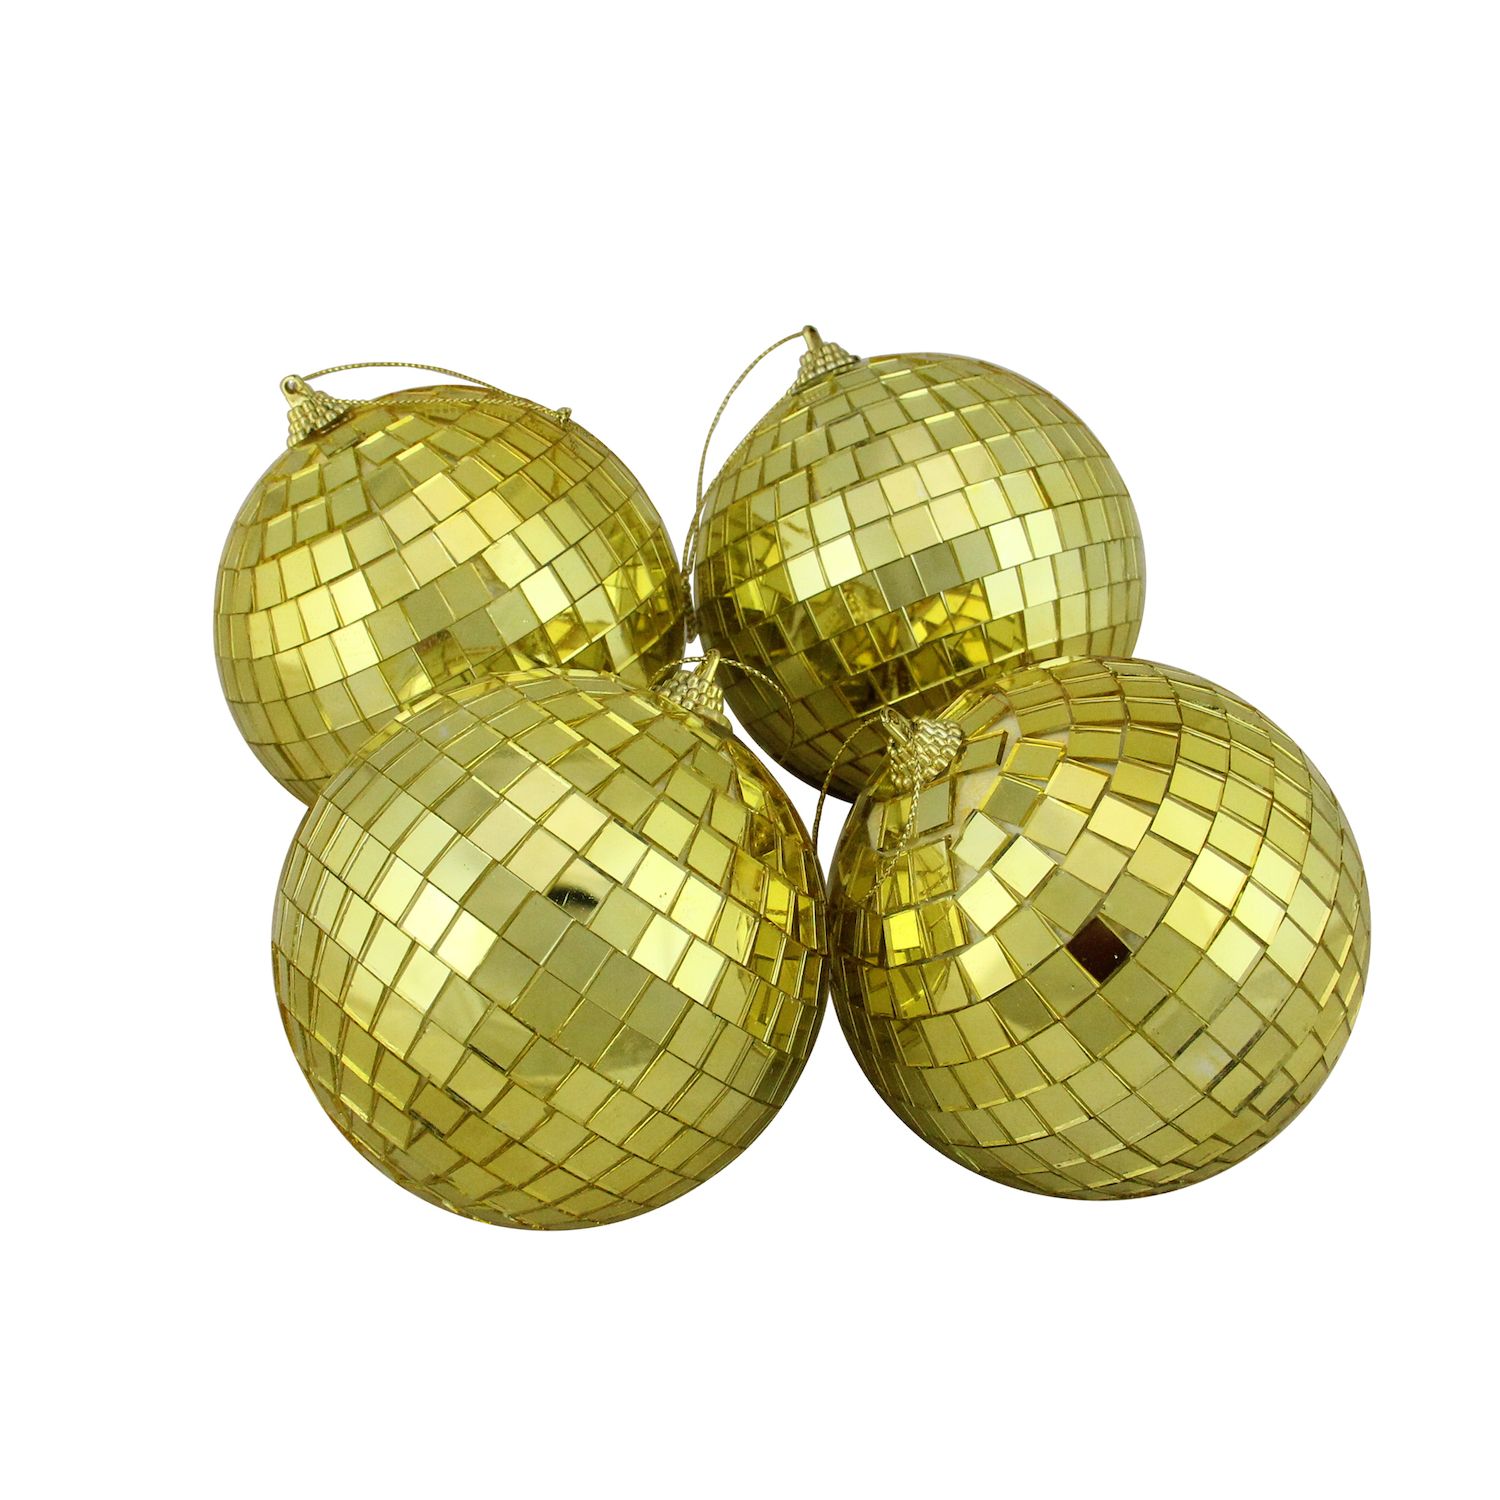  Soaoo 100 Pcs Christmas Ornament Balls 1.96'' Clear